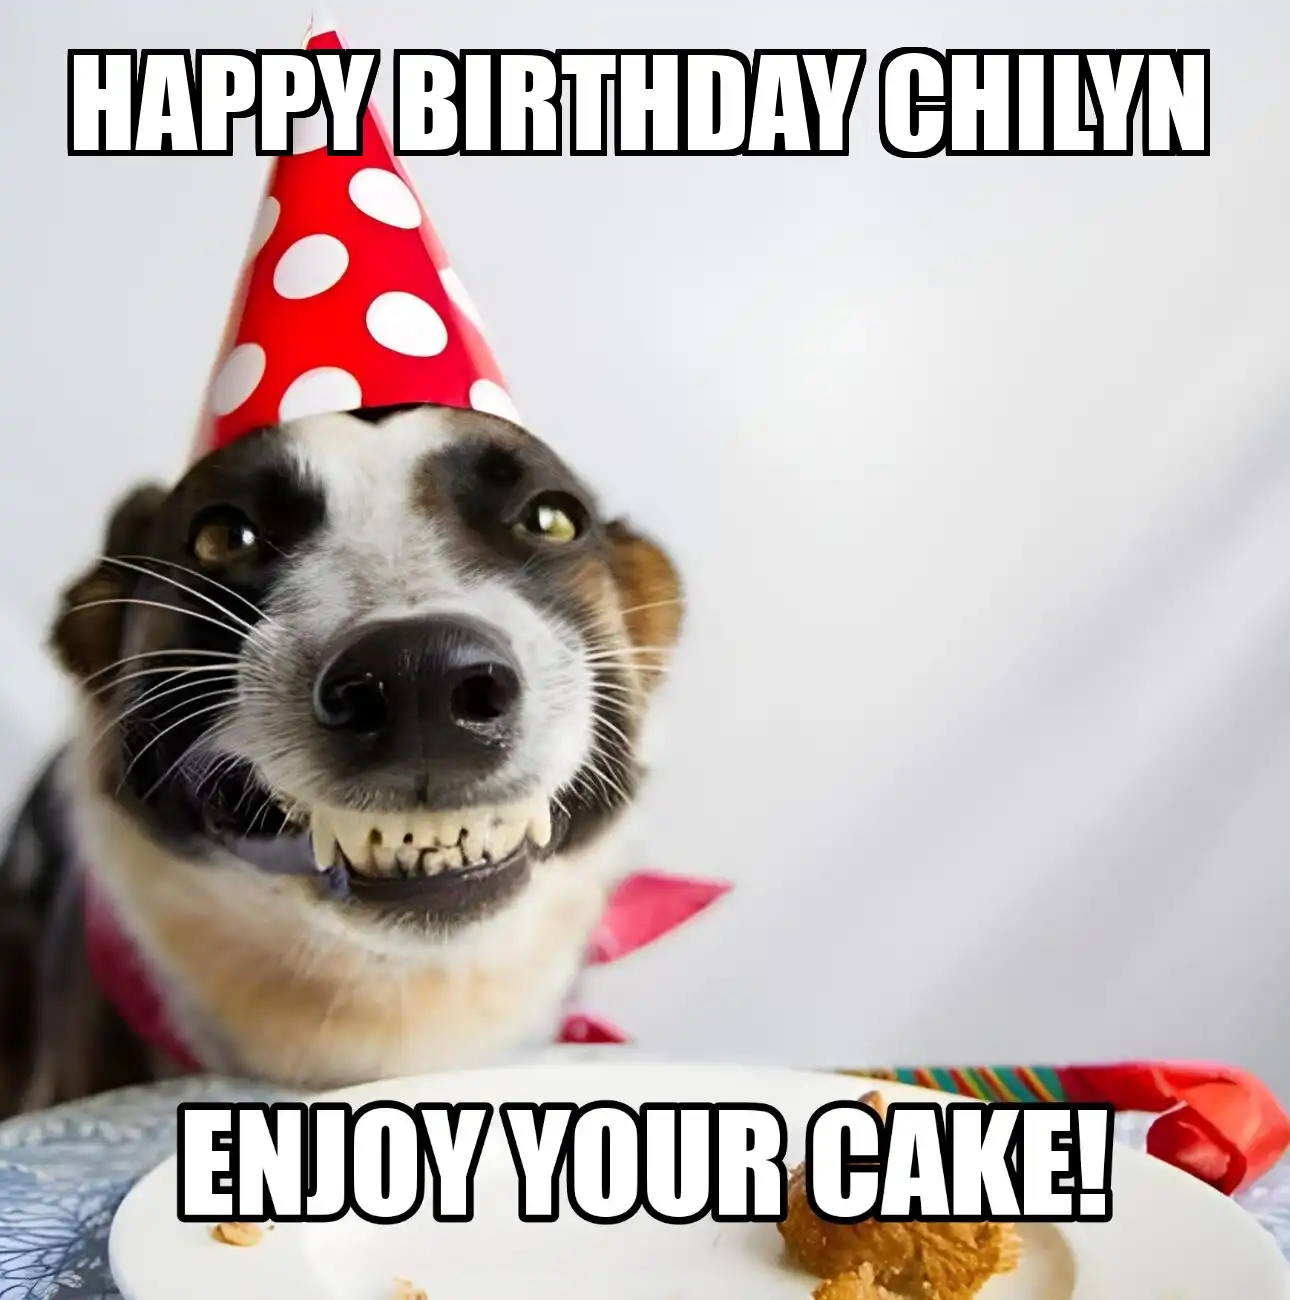 Happy Birthday Chilyn Enjoy Your Cake Dog Meme